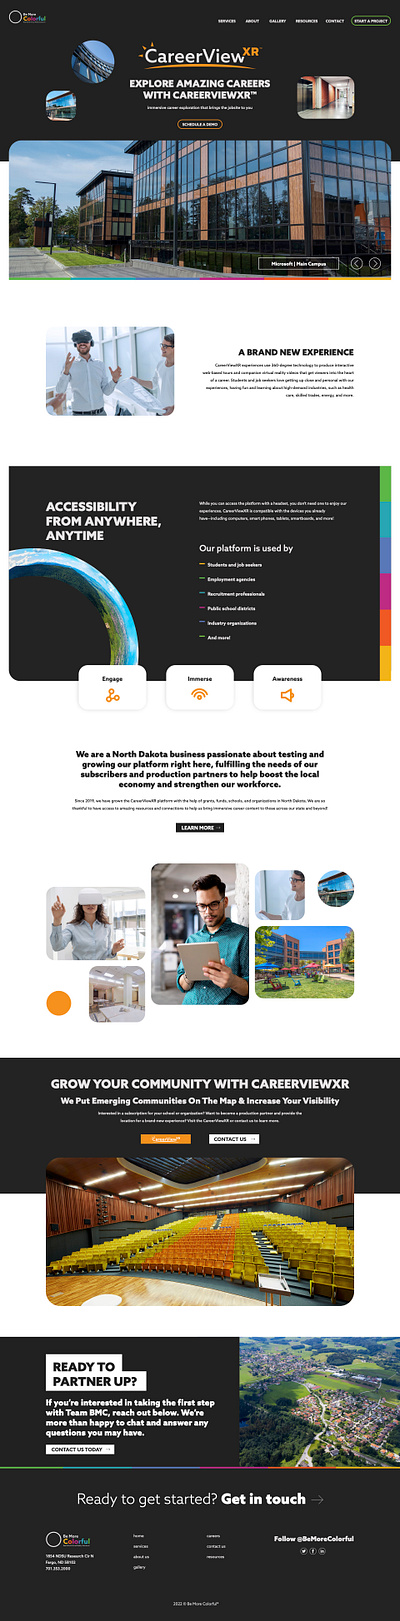 Be More Colorful - Web Design web design